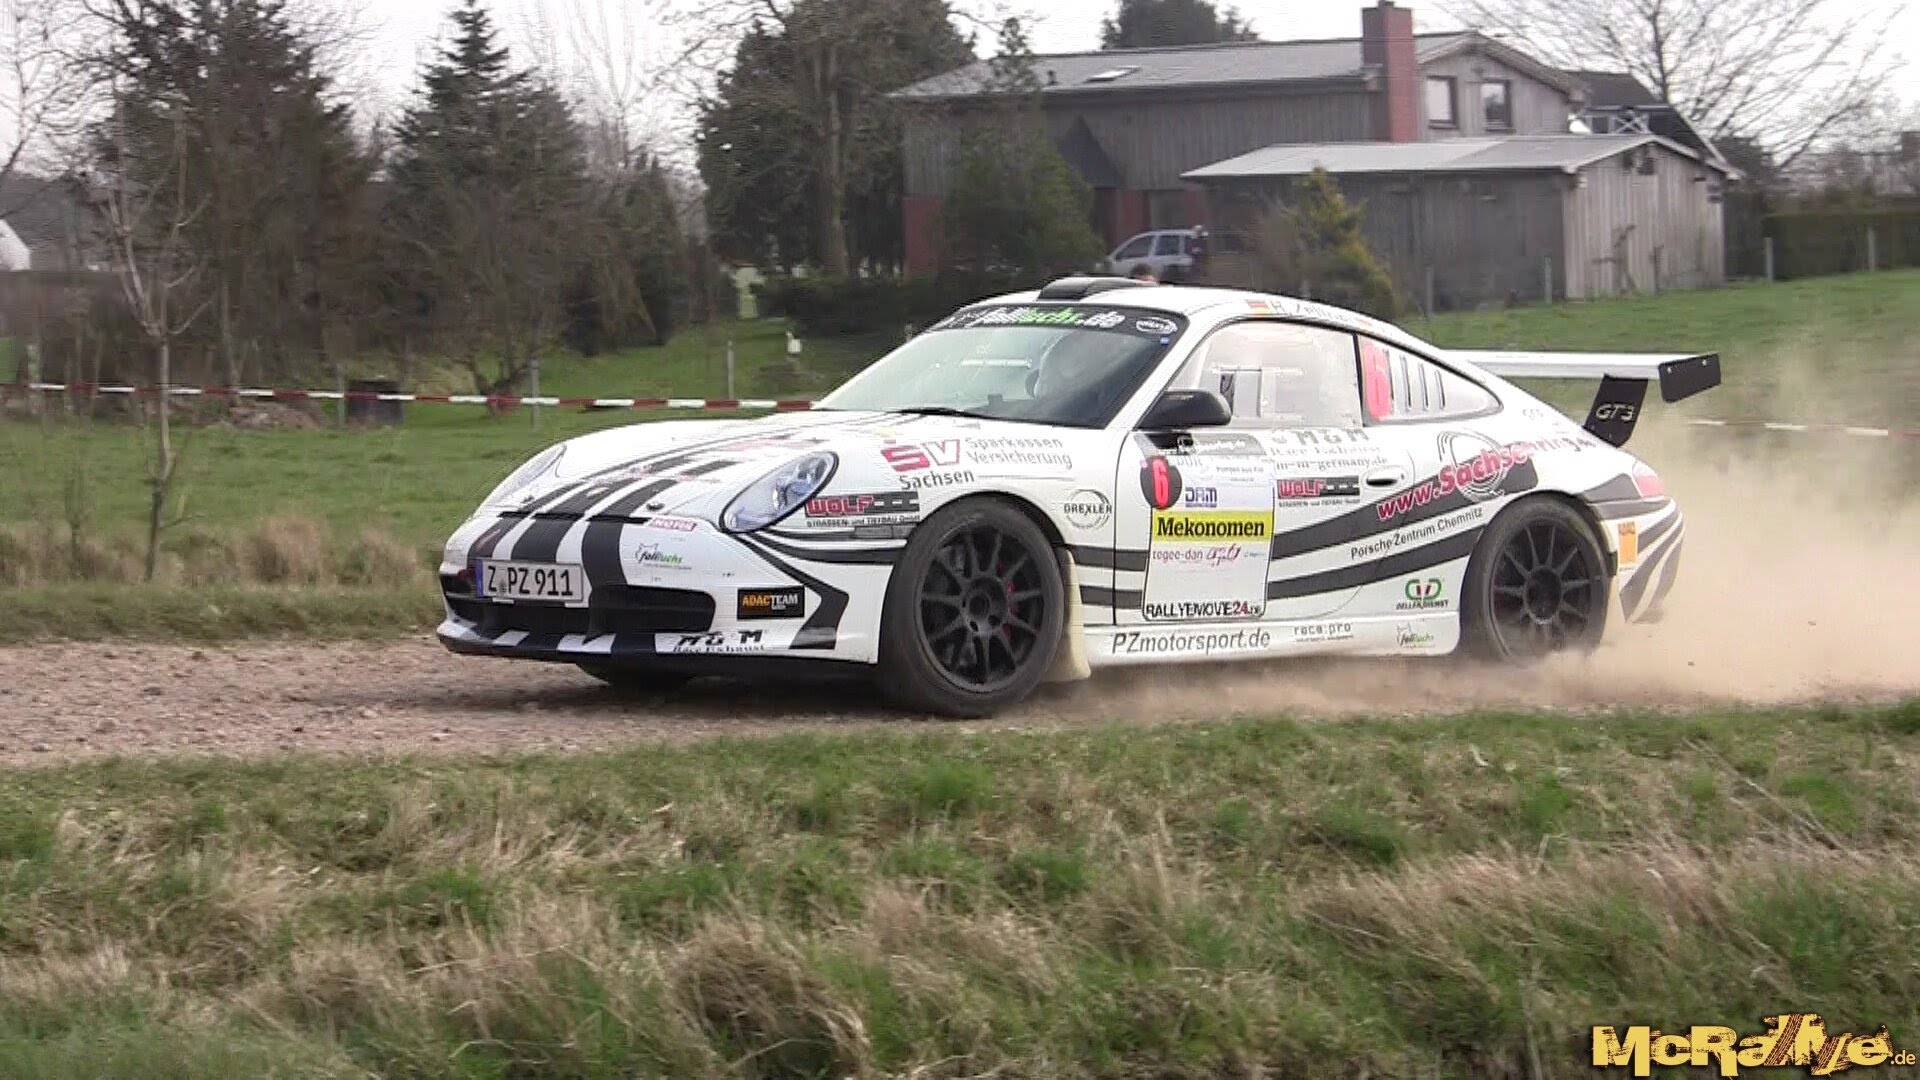 Видео - сумасшедшая скорость из кабины раллийного Porsche 911 GT3